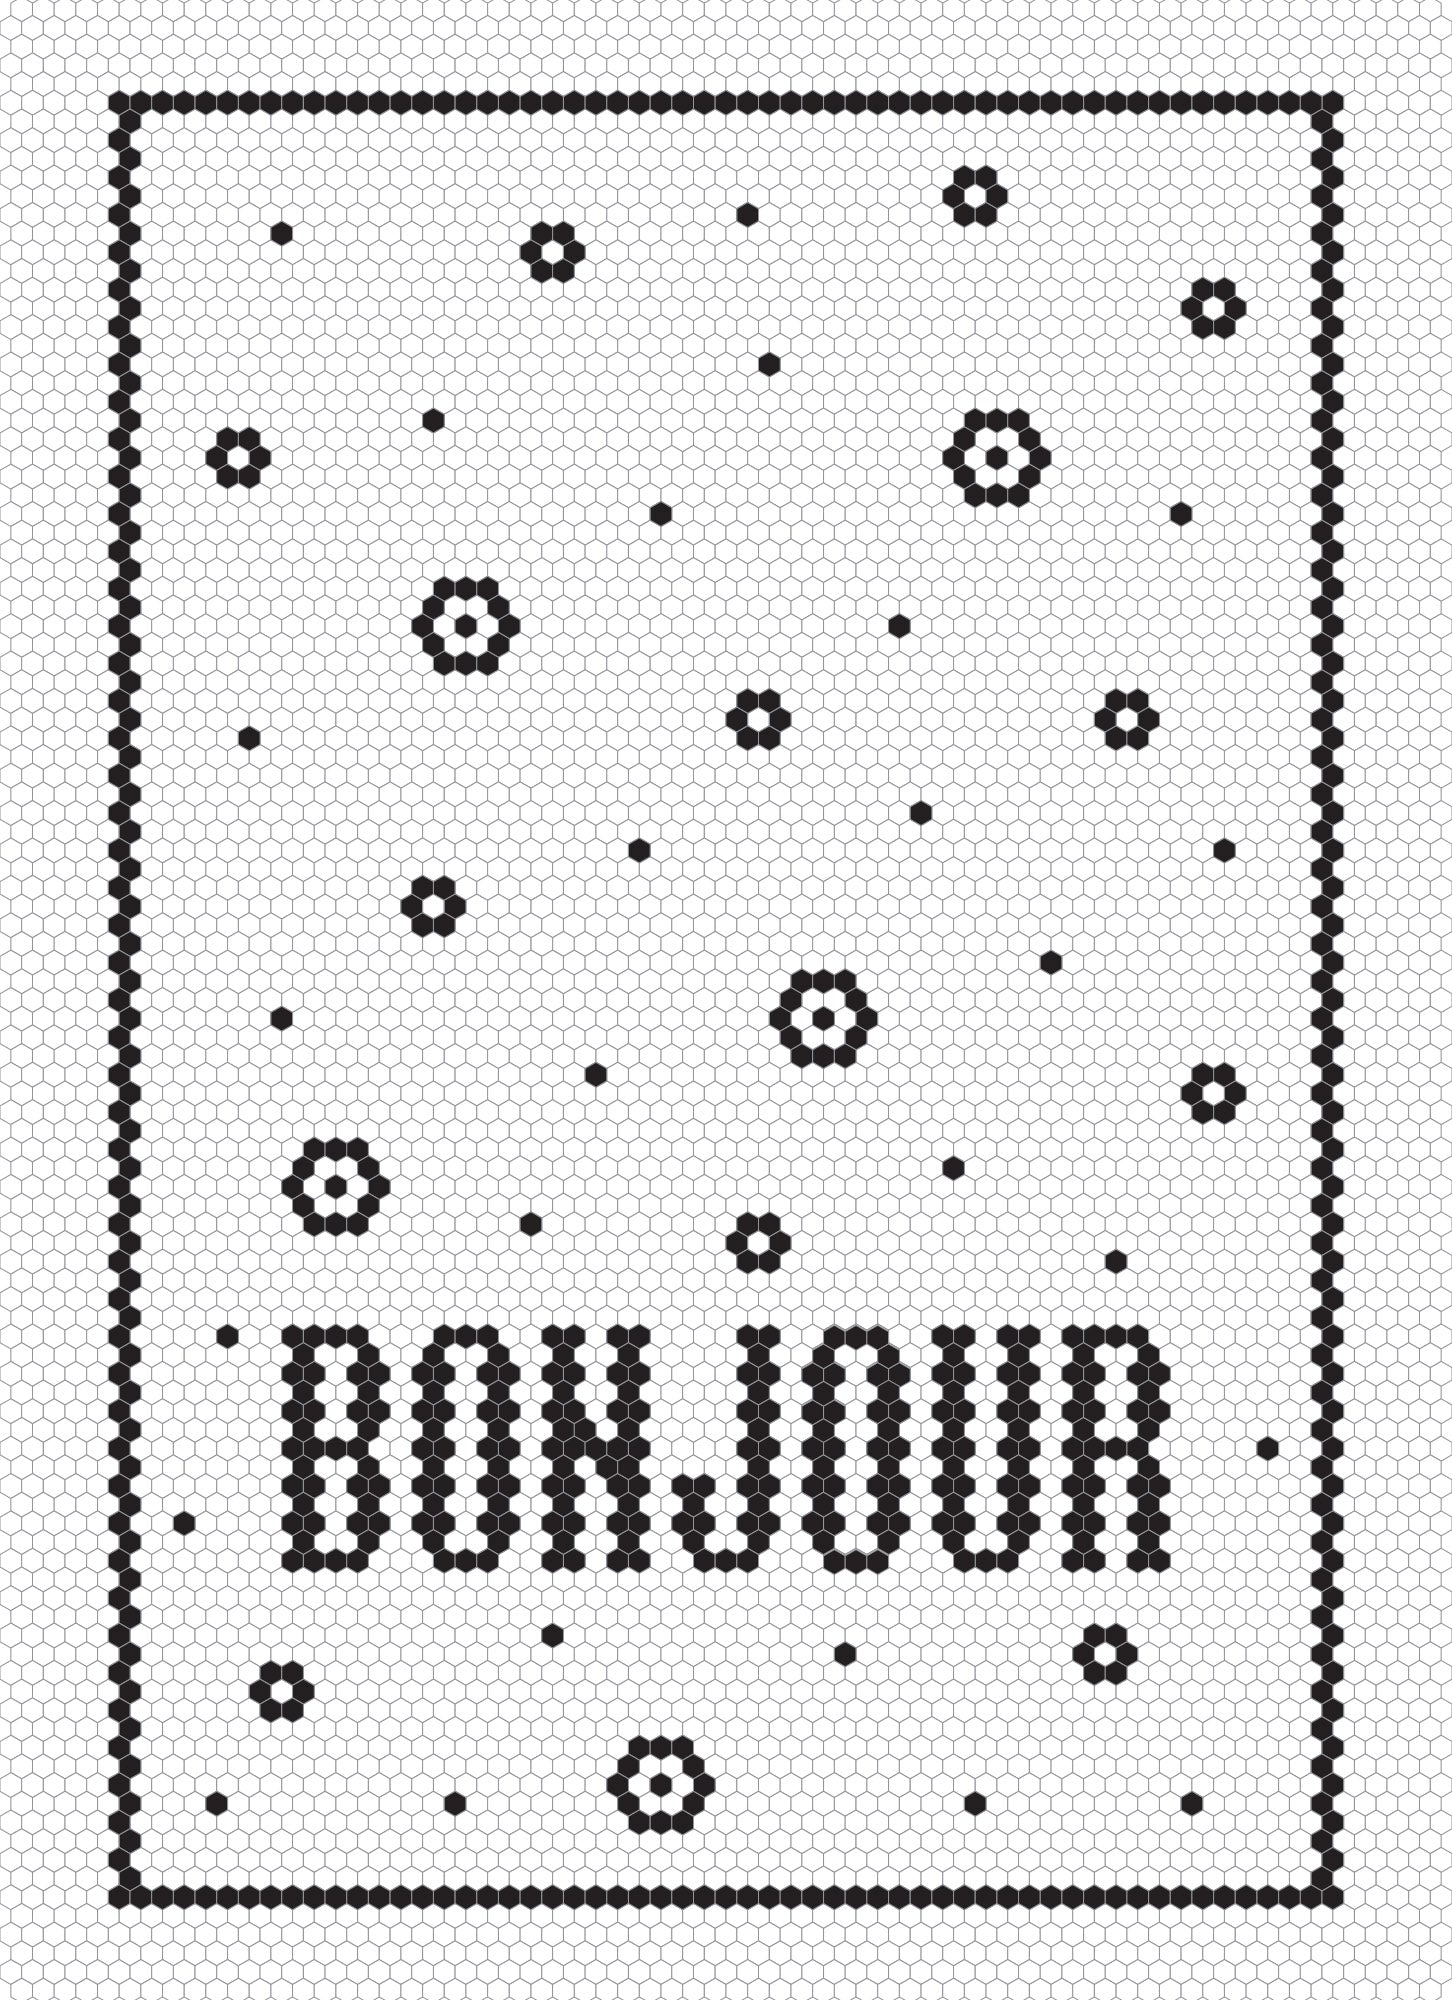 Bonjour Mosaique - Linge a vaisselle / Bonjour Mosaic Tea Towel